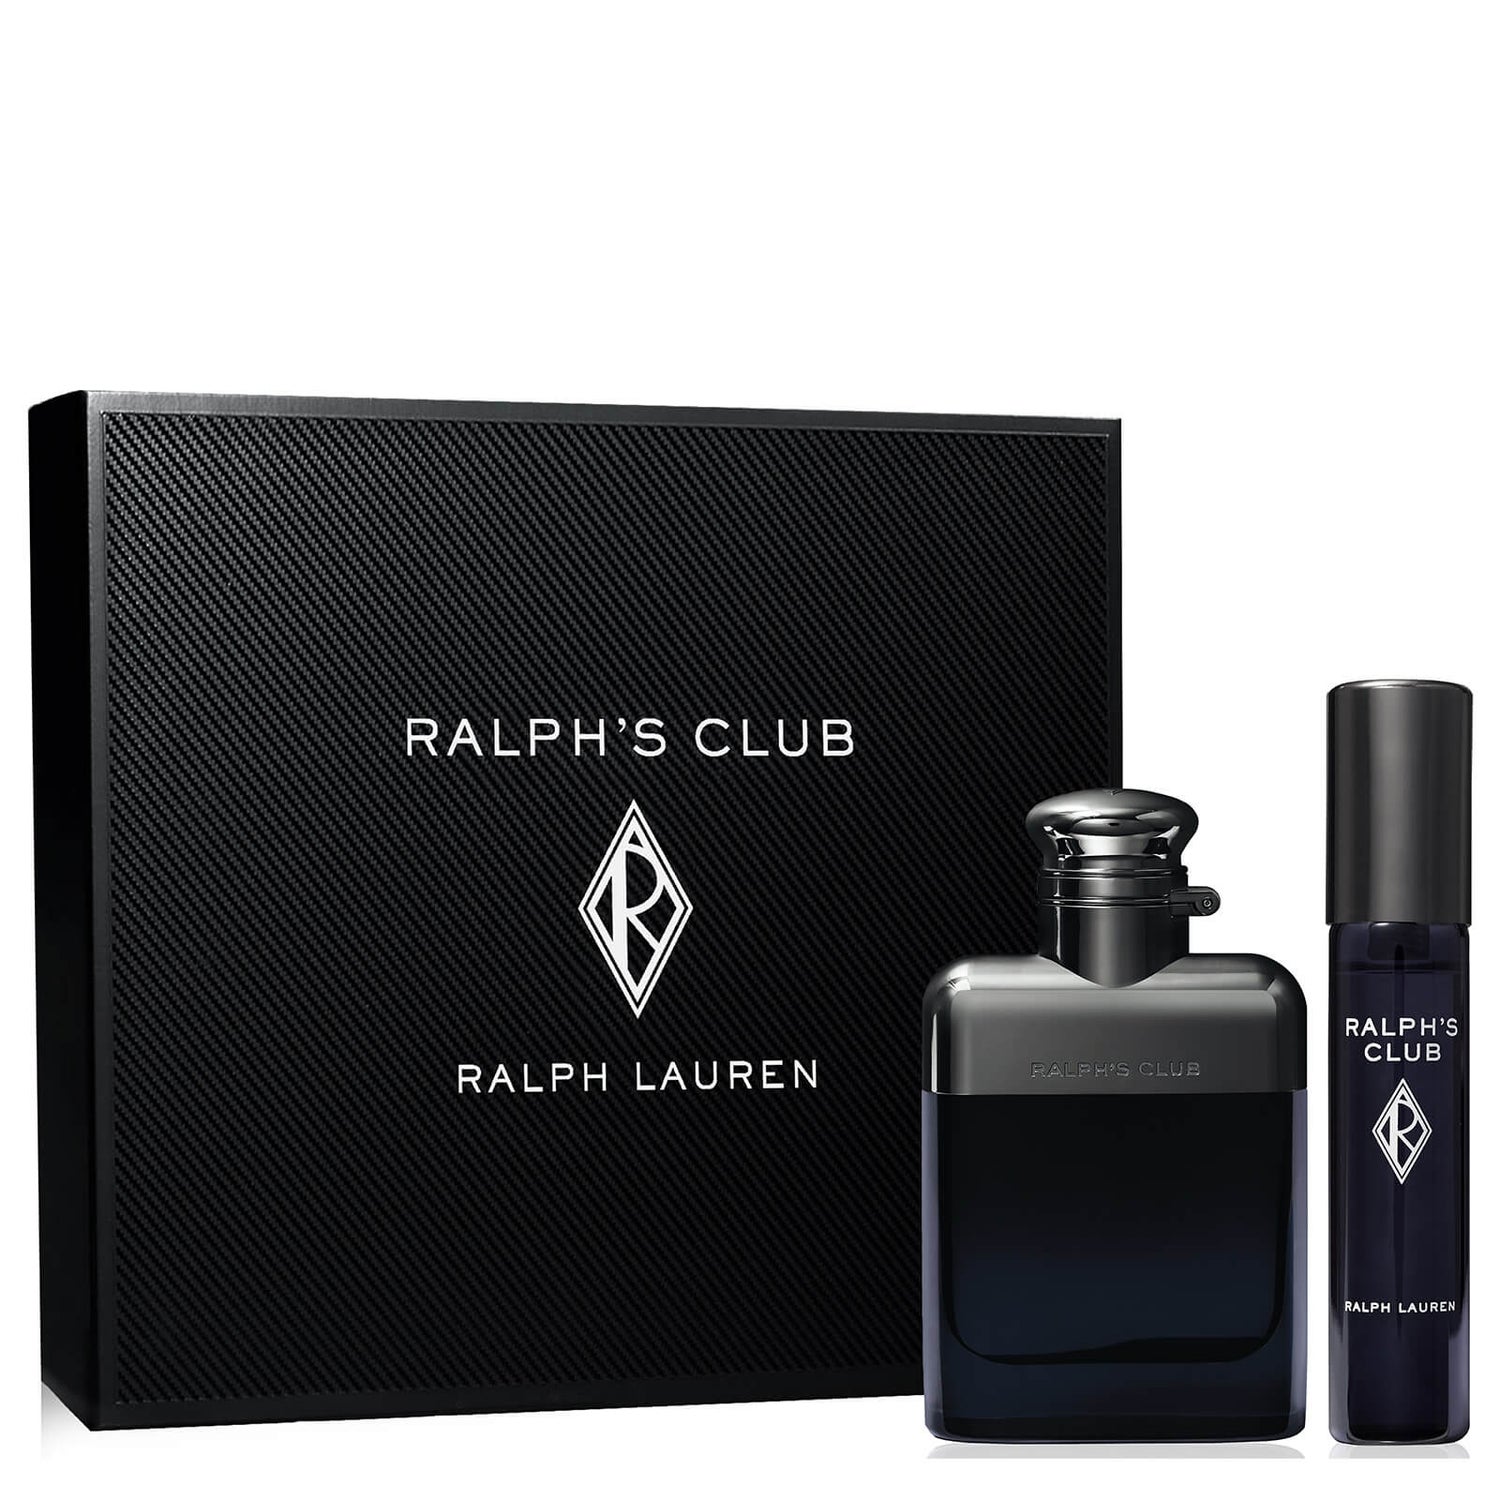 Ralph Lauren Ralph's Club Eau de Toilette Set Regalo 50ml (Valore 75,87€)